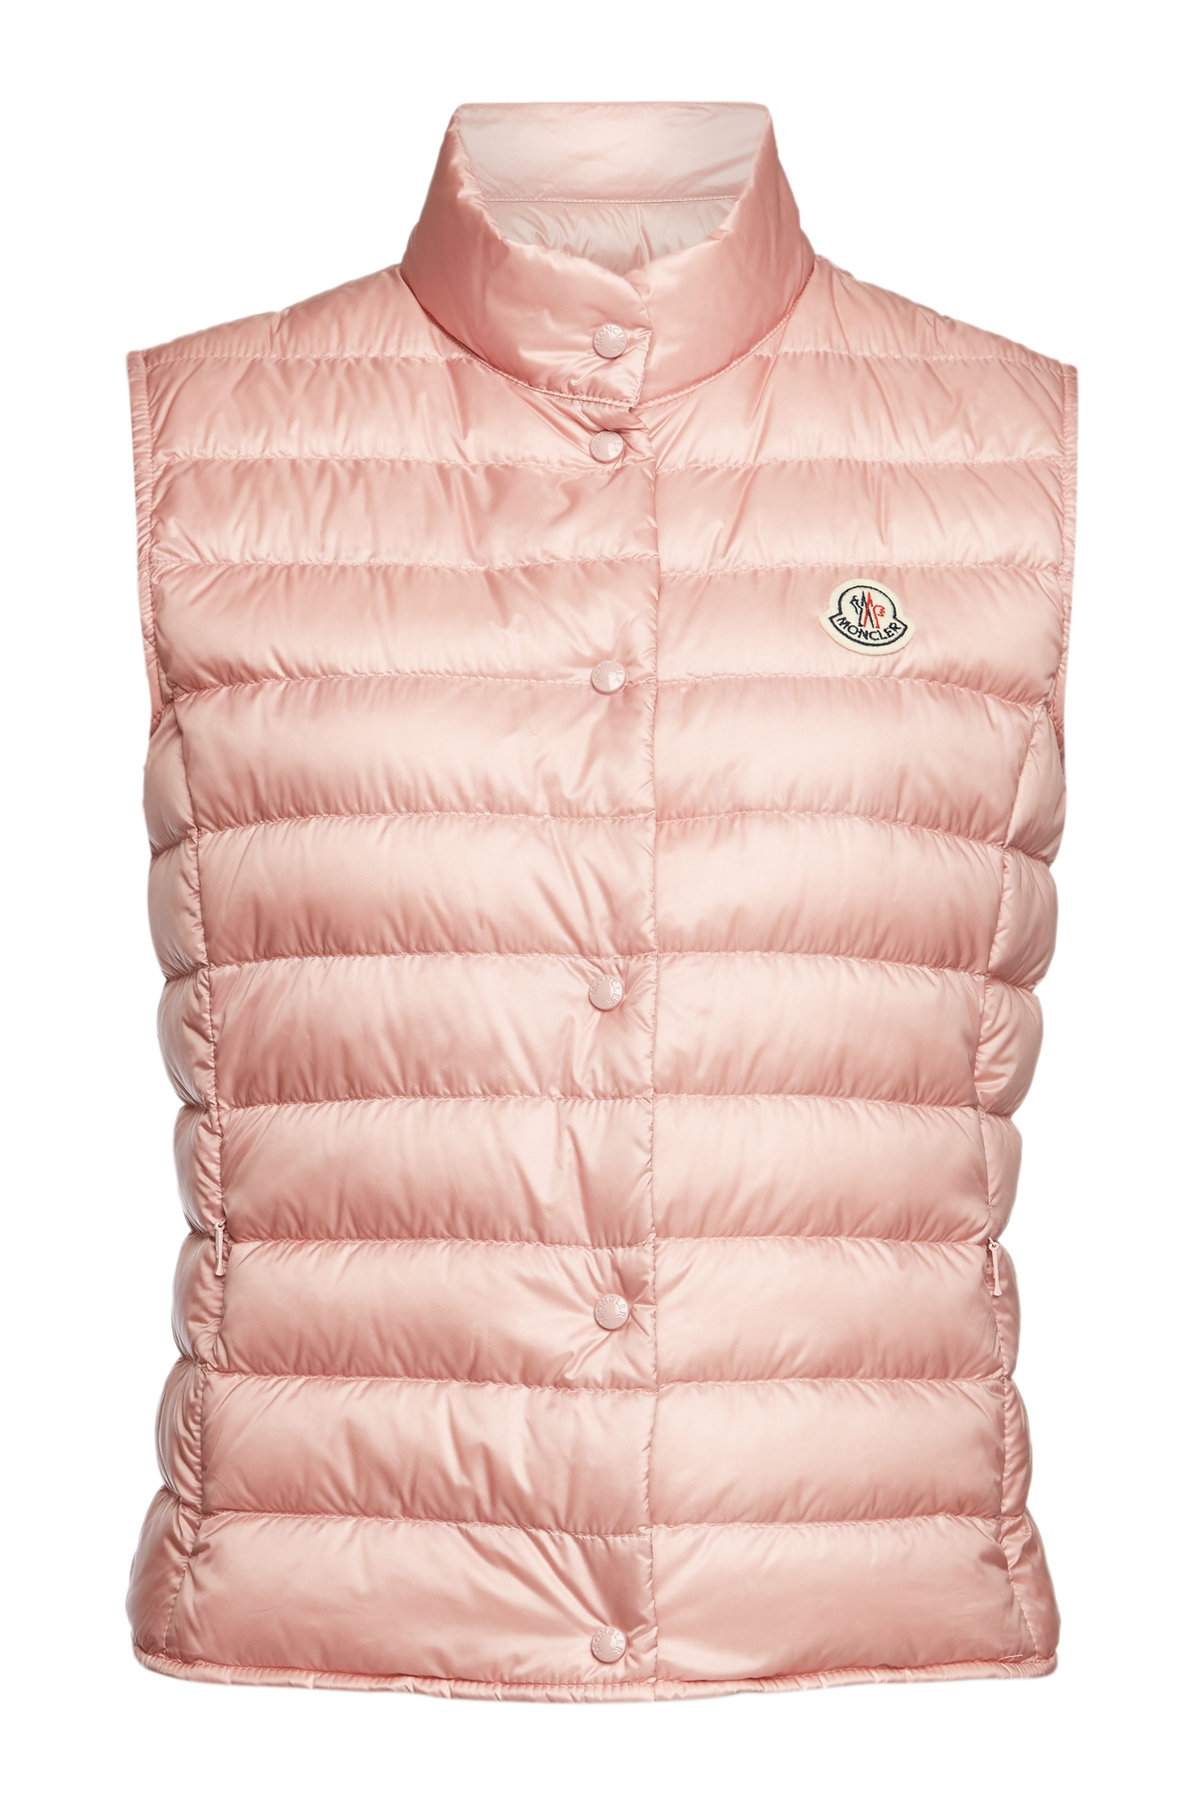 moncler vest pink